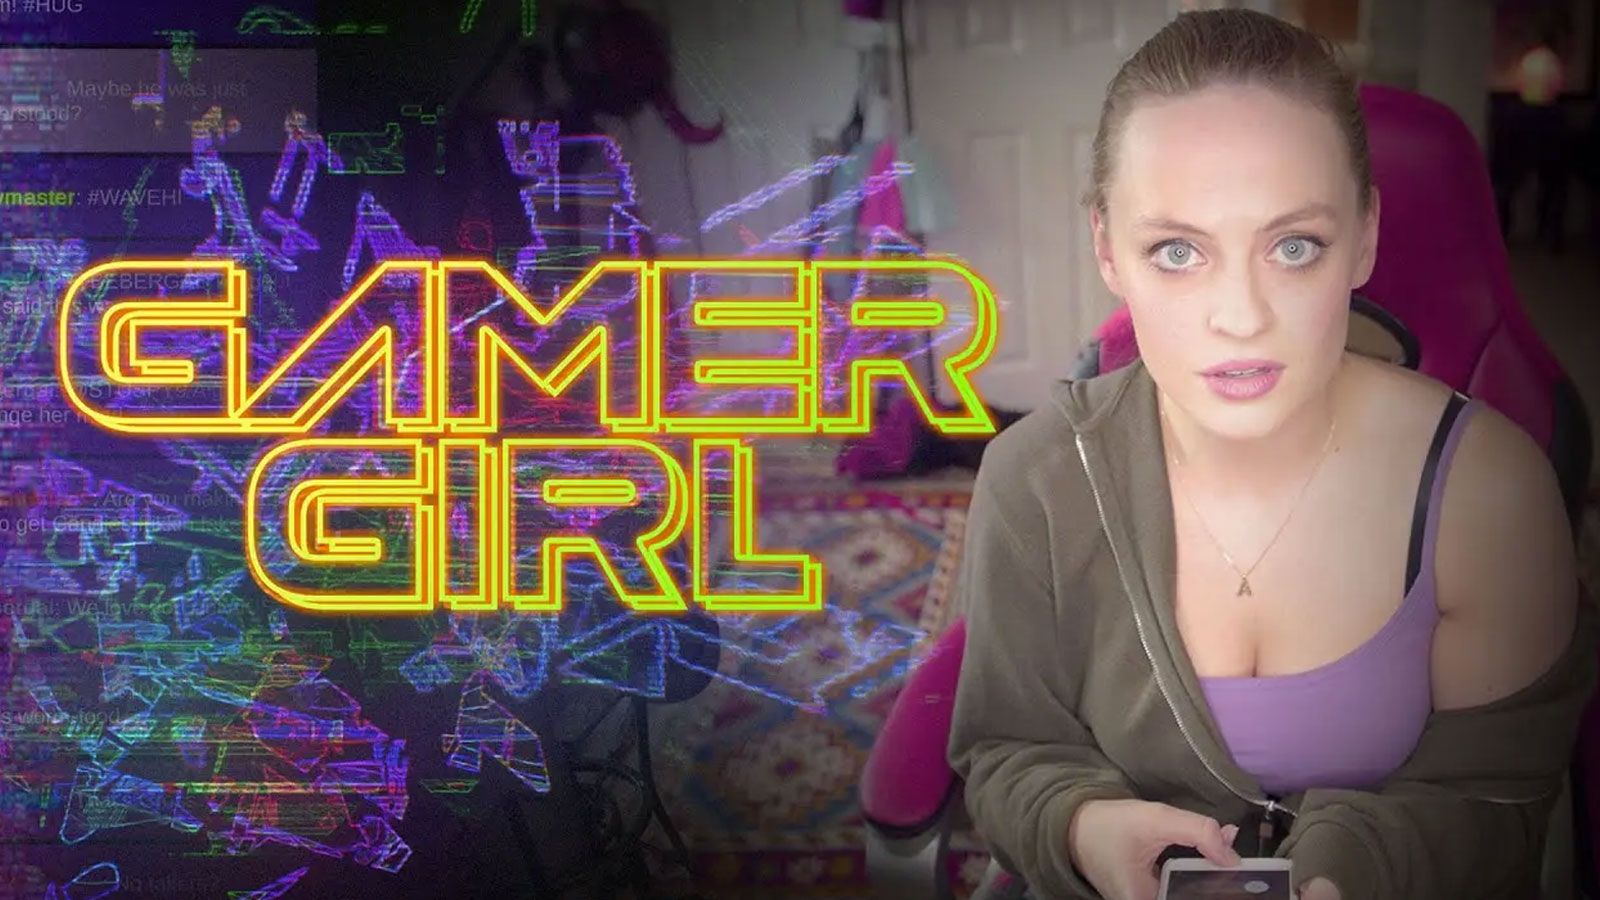 Interactive streamer game 'Gamer Girl' sparks backlash on social